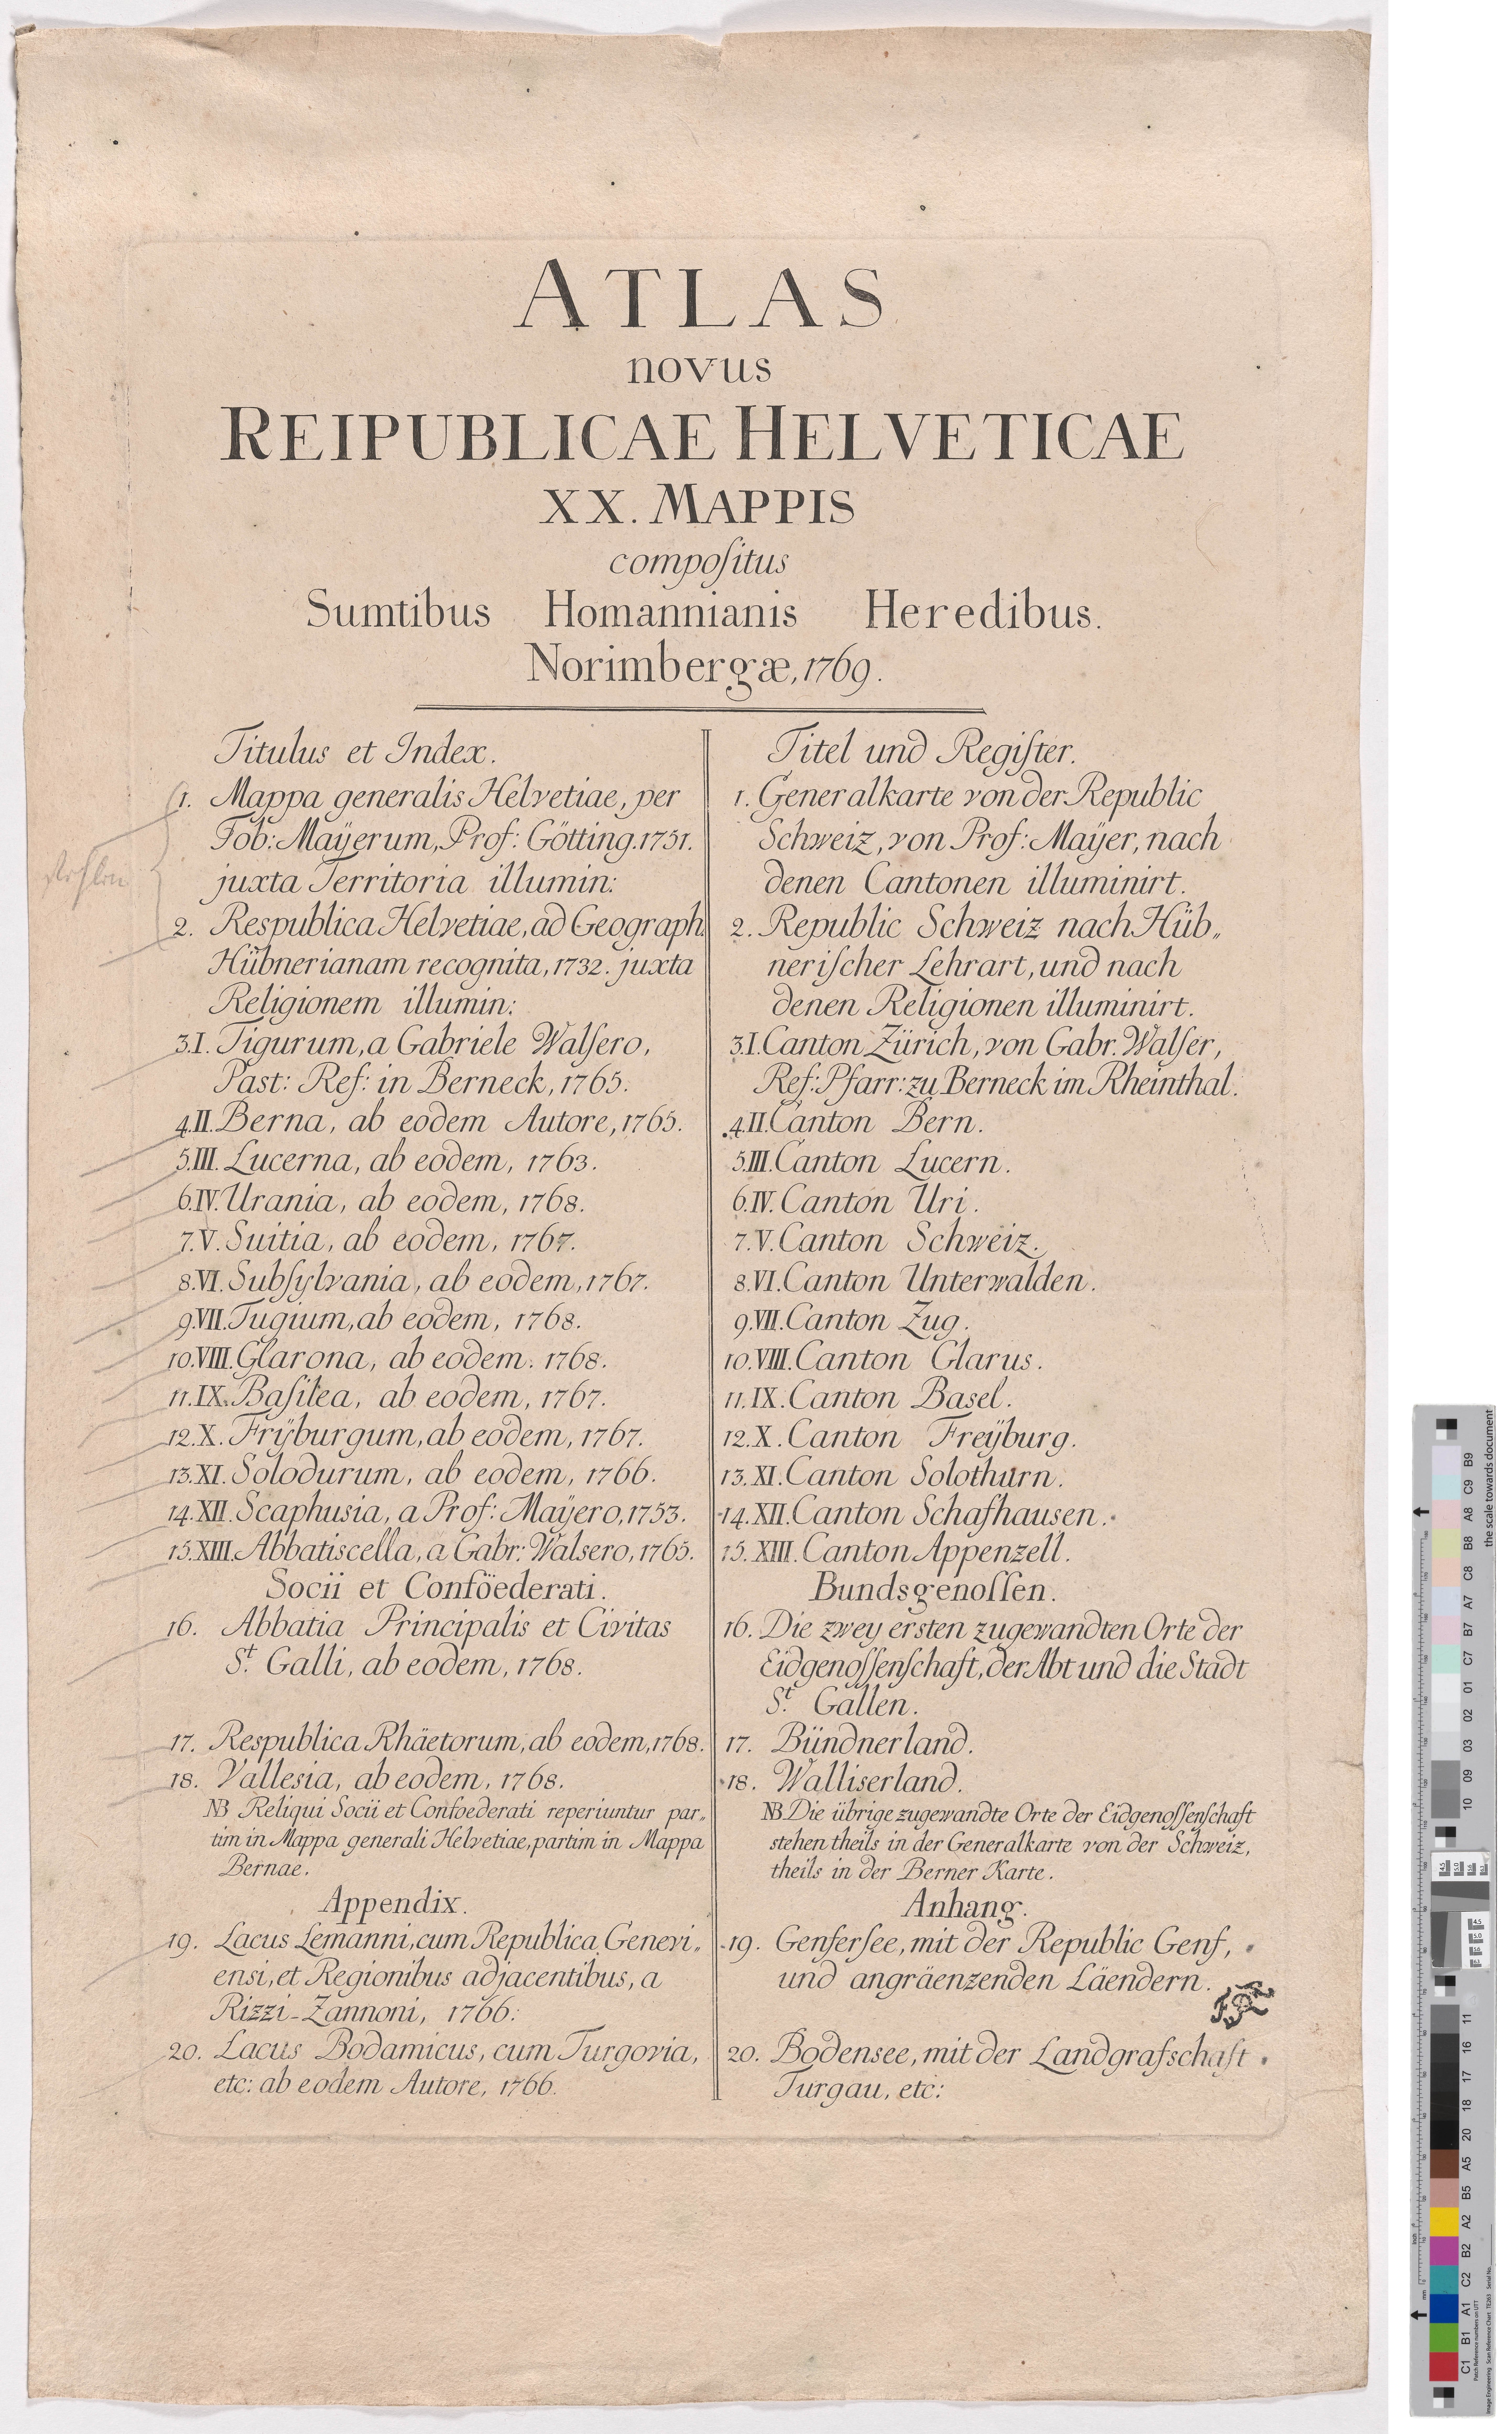 Buchseite mit Inhaltsverzeichnis des "Atlas novus Reipublicae Helveticae XX Mappis" (Kreismuseum Grimma RR-F)